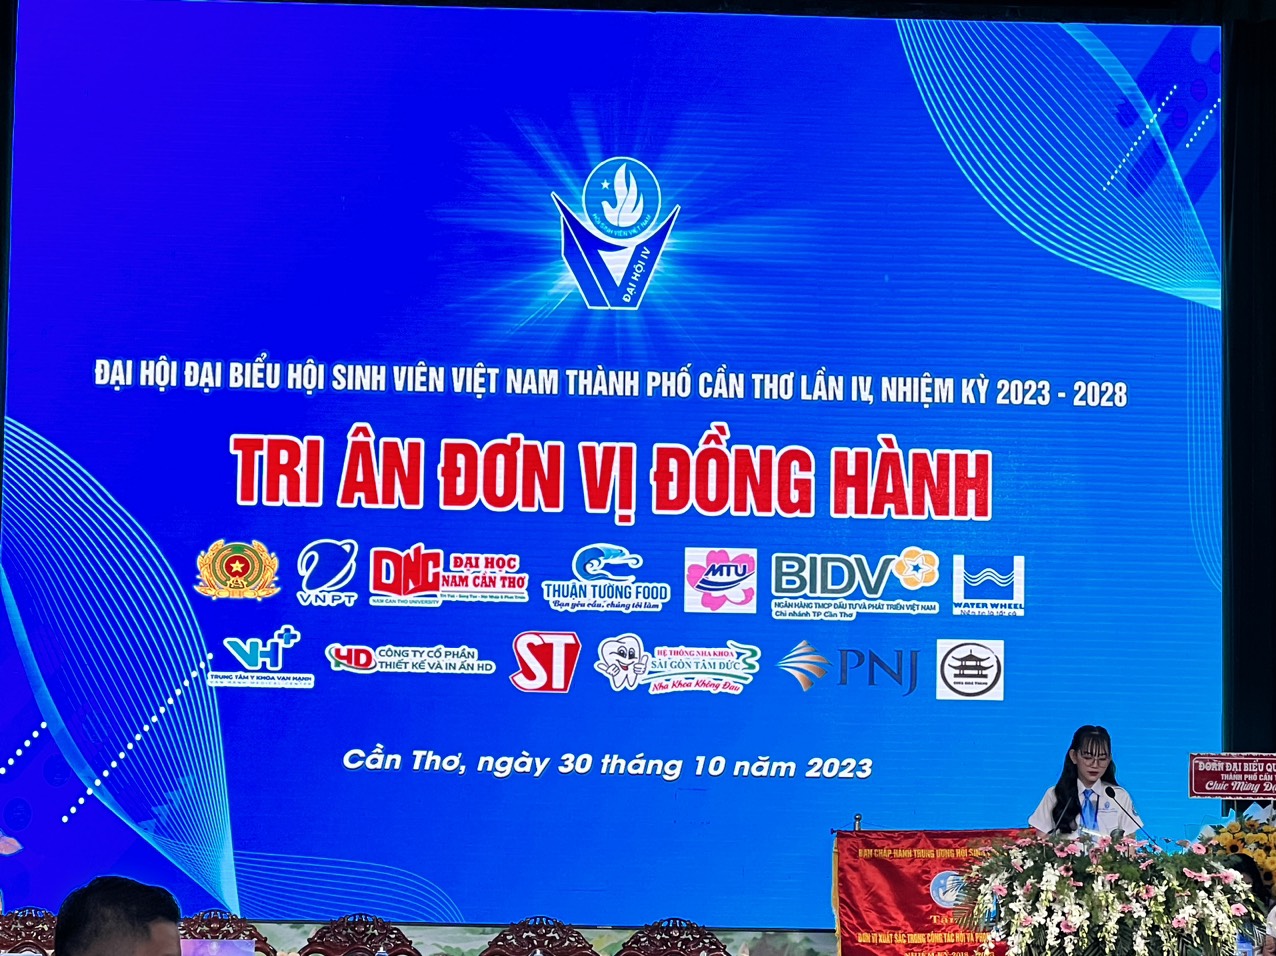 Thuận Tường Food tại Đại Hội Đại Biểu Hội Sinh Viên VIệt Nam Thành Phố Cần Thơ Lần IV, Nhiệm Kỳ 2023 - 2028